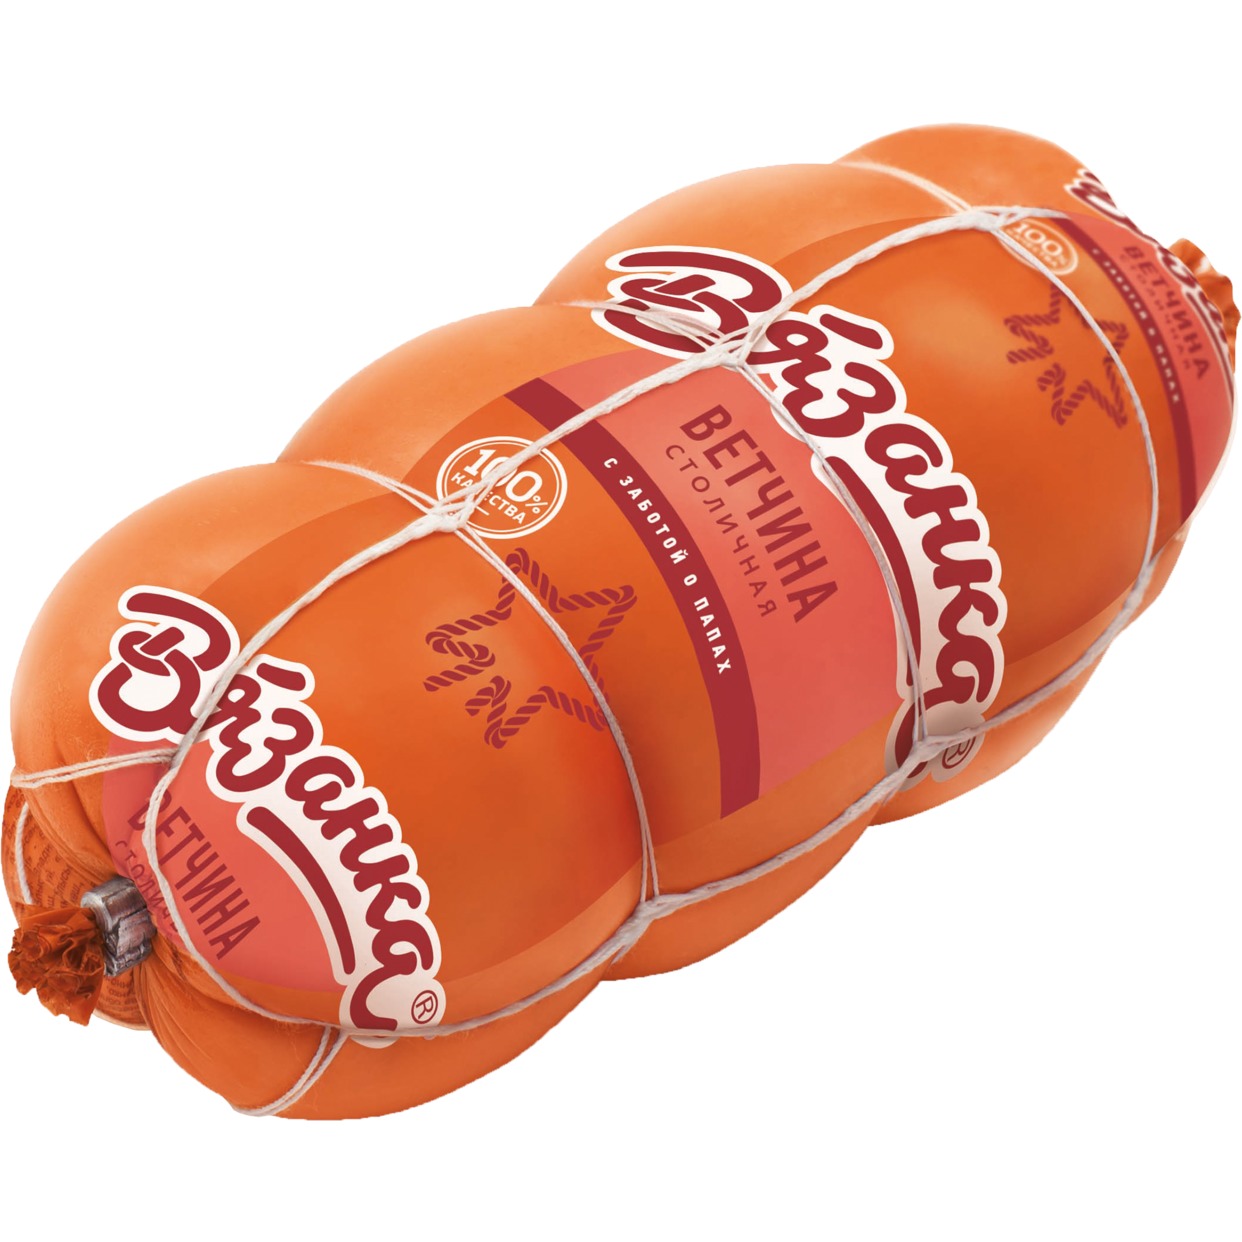 Ветчина Столичная Вязанка, Стародворские колбасы, 500 г по акции в Пятерочке